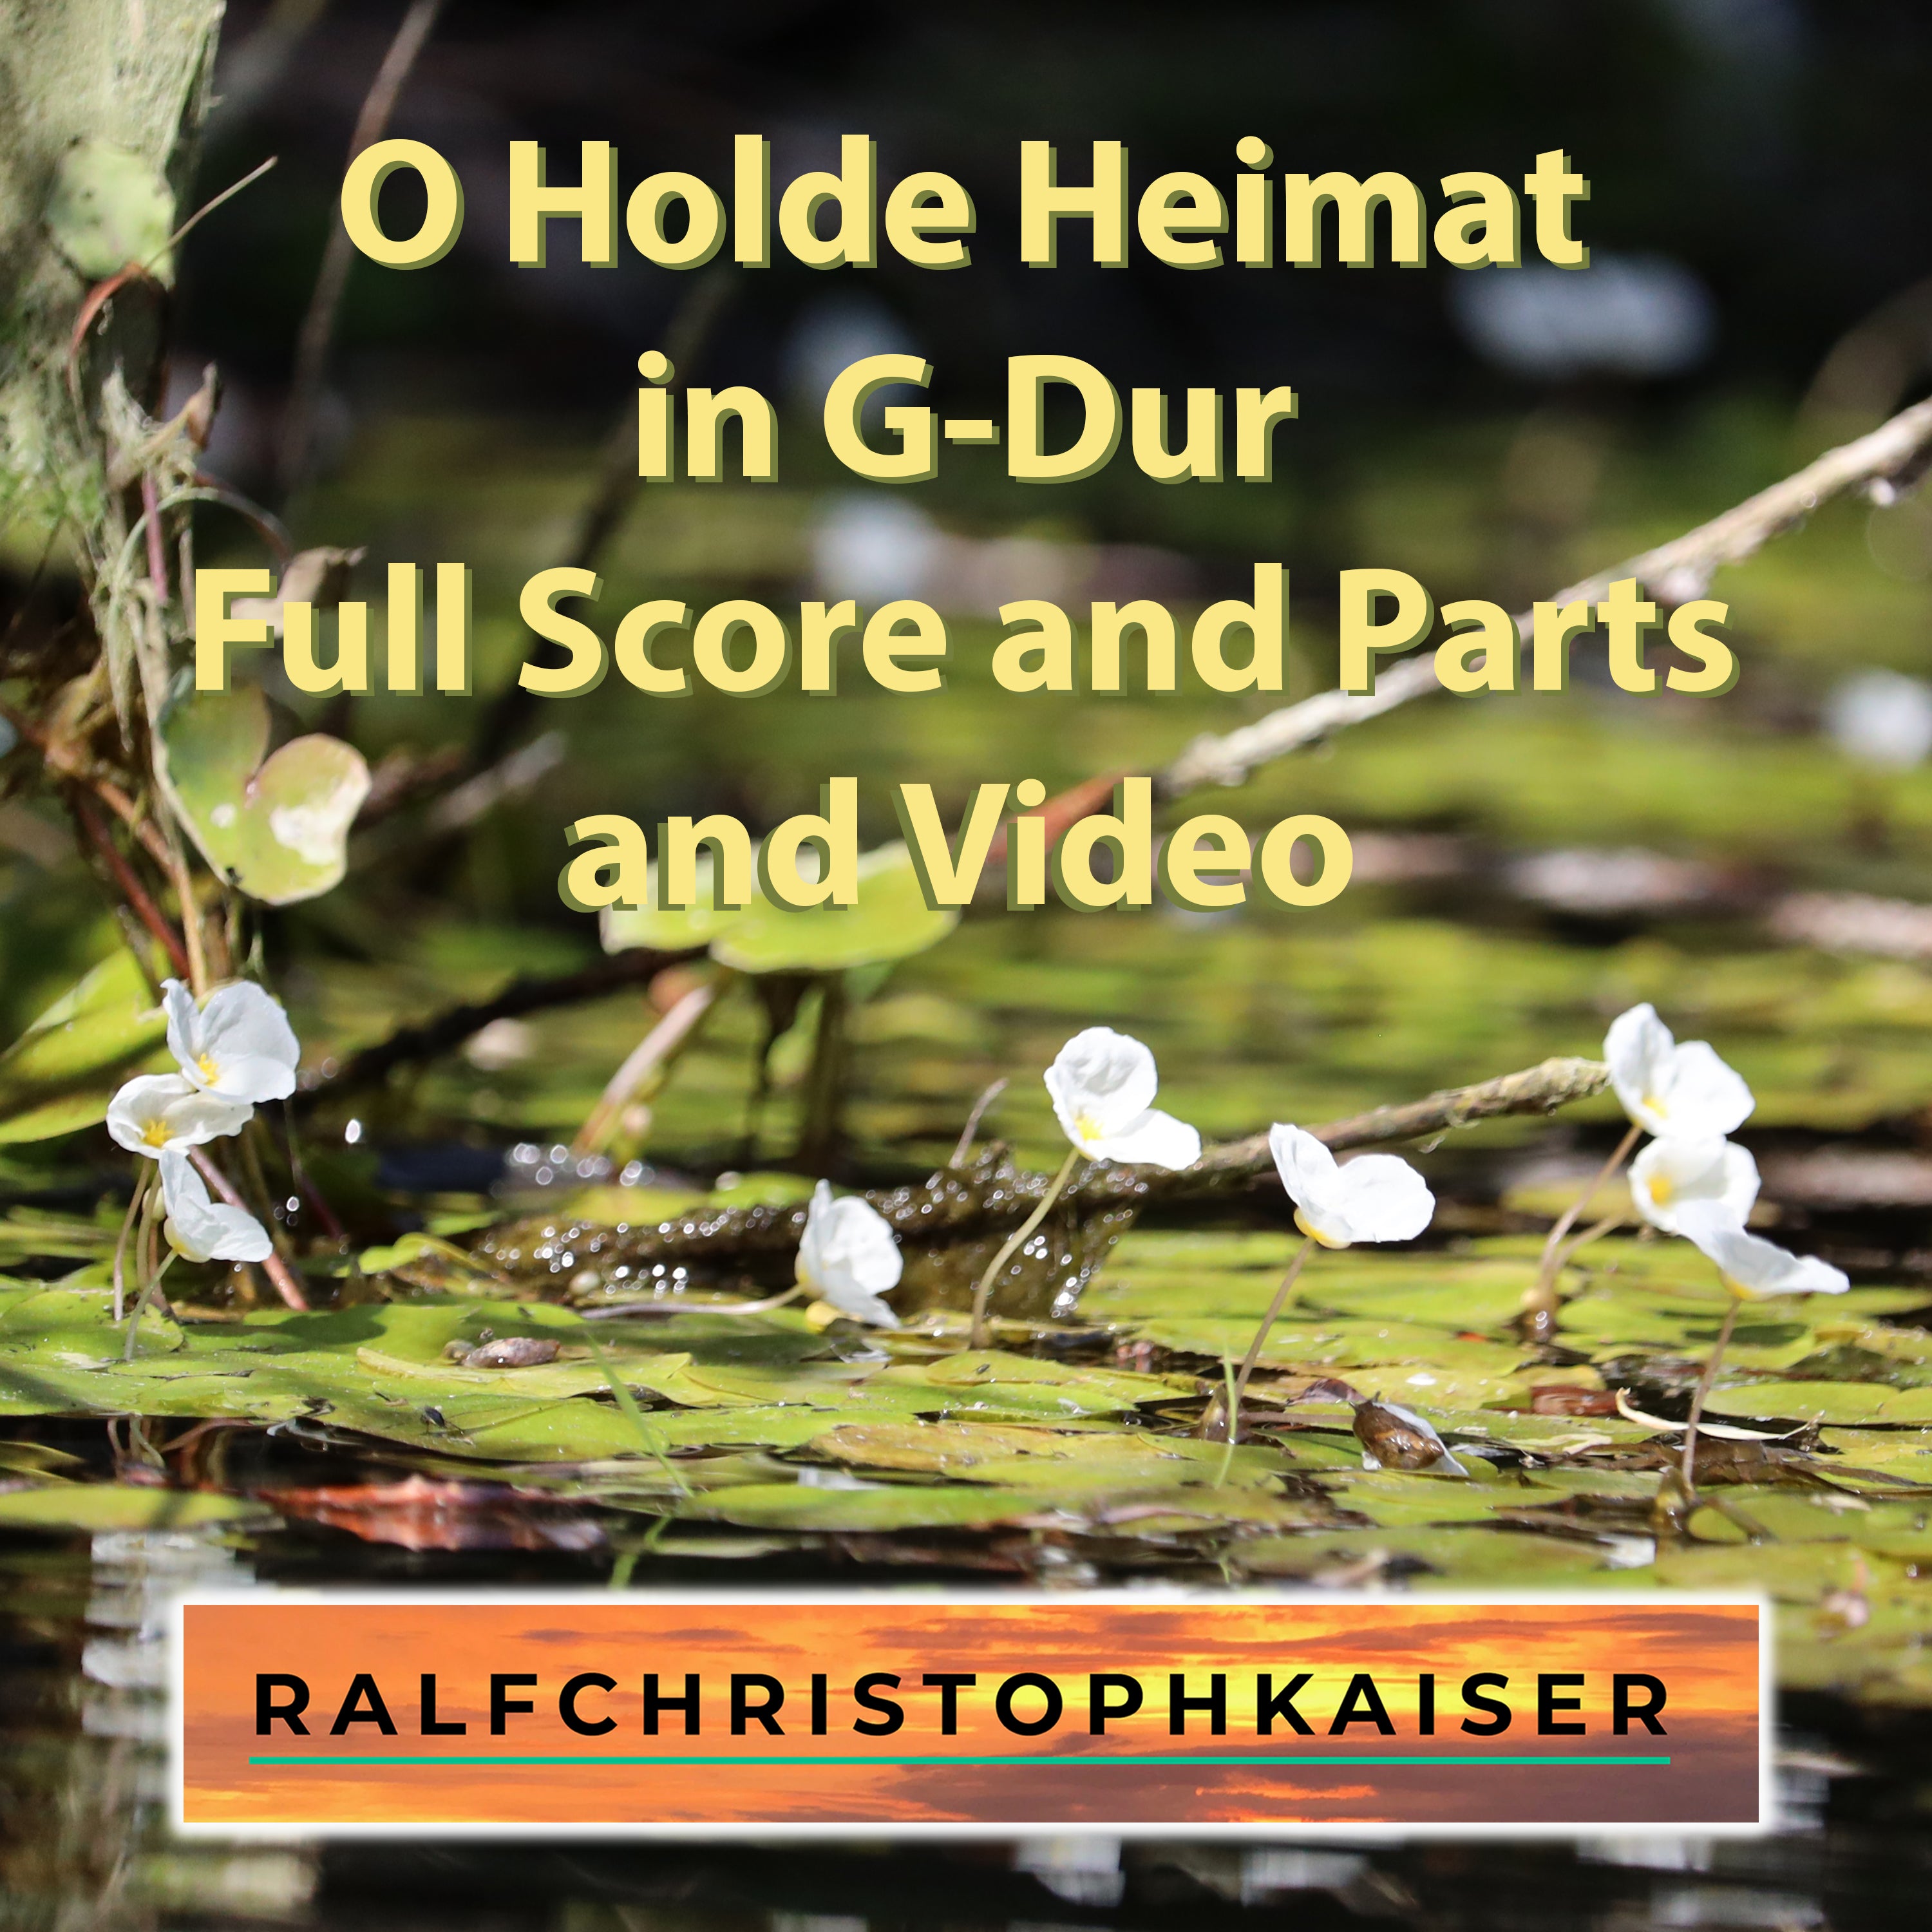 "O Holde Heimat" neues klassisches Orchester Stück in G-Dur by Ralf Christoph Kaiser in High Resolution wav File und Full Score and Parts und Video - ralfchristophkaiser.com Musik und Noten